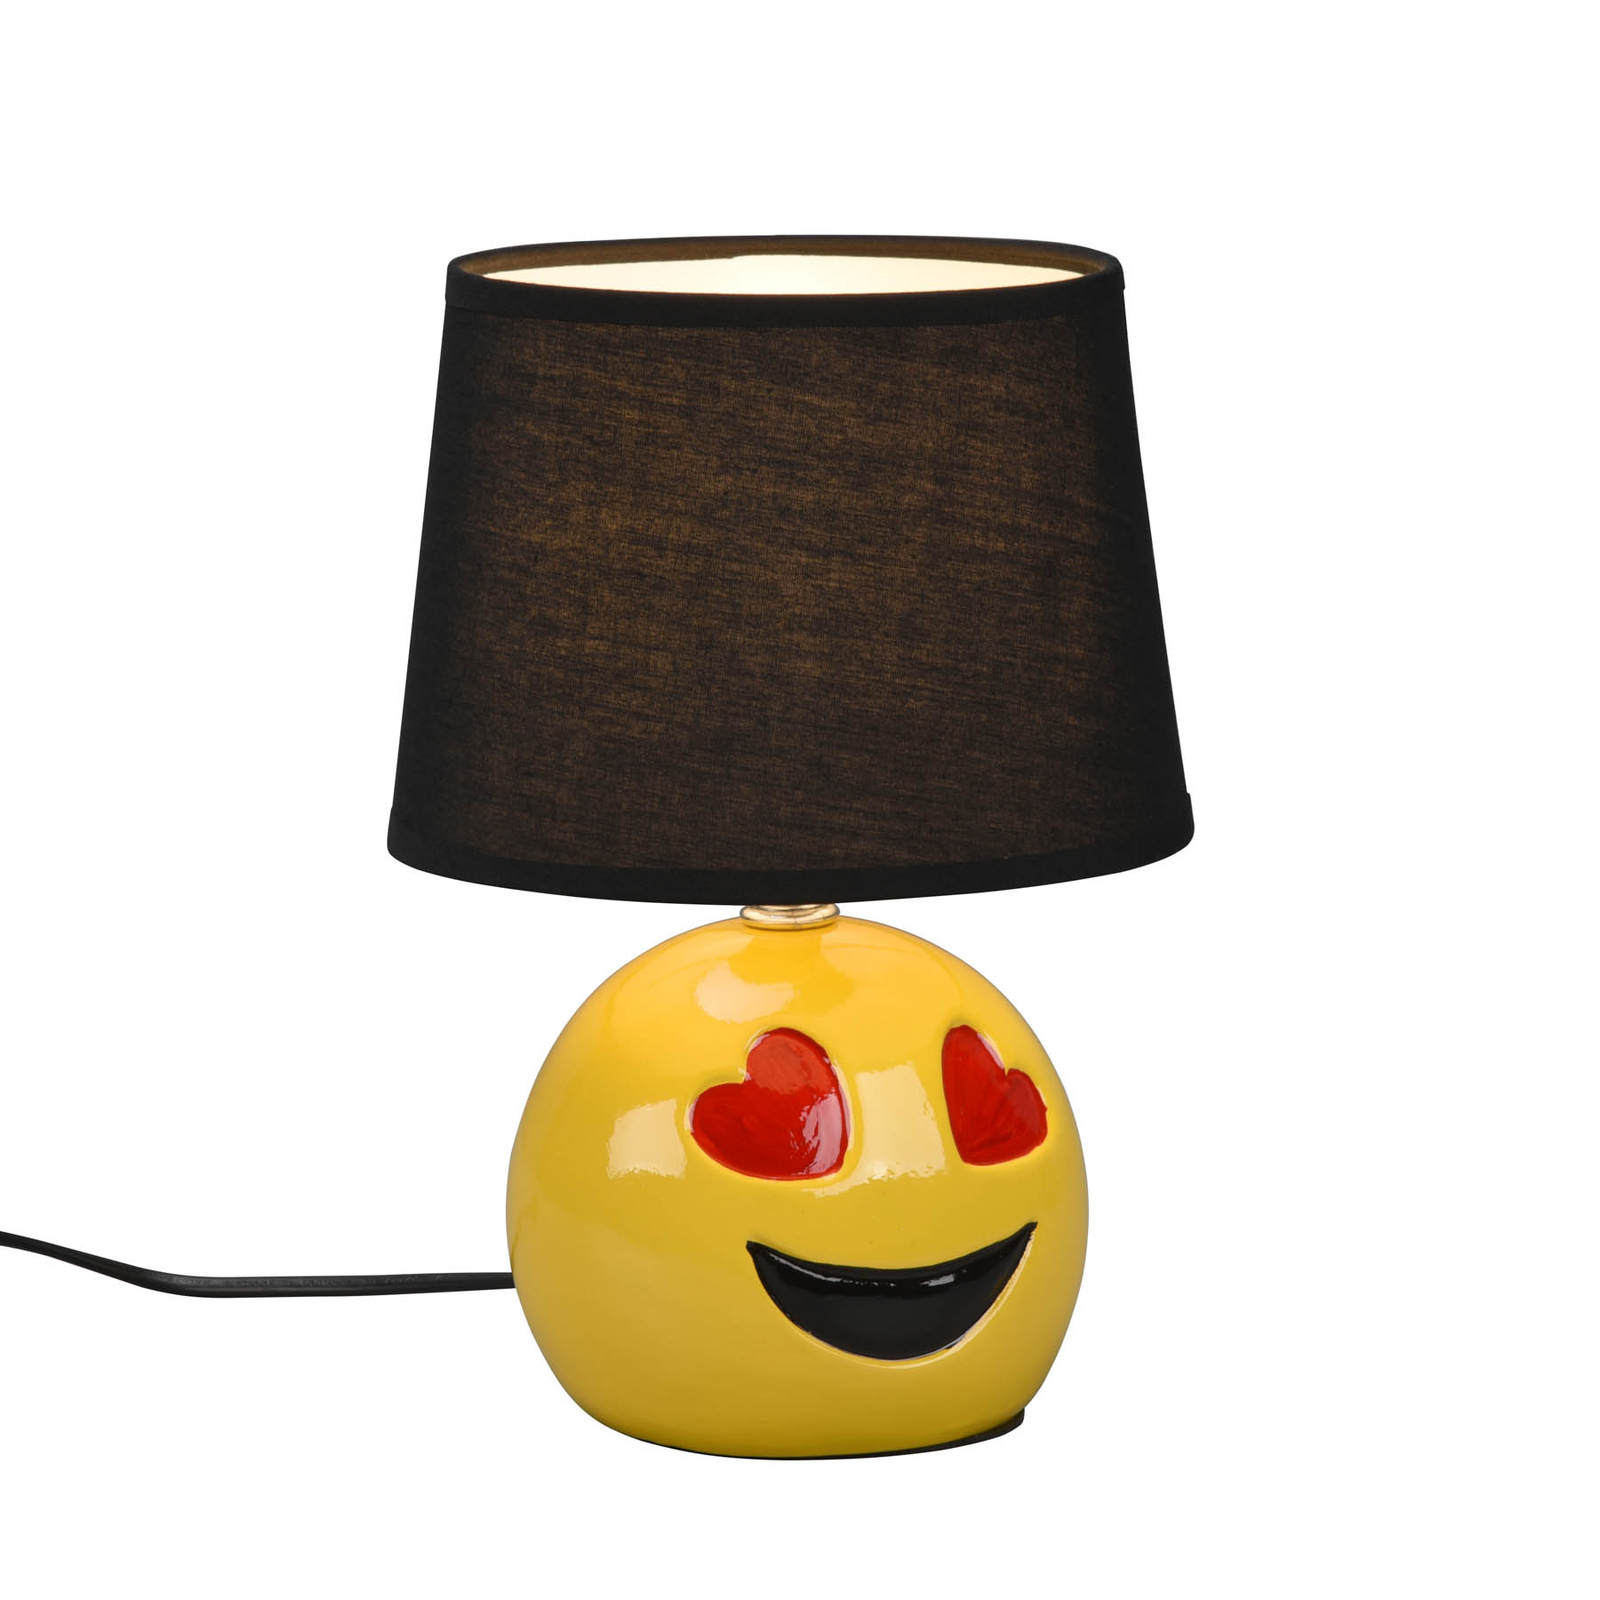 Lámpara de mesa Lovely con smiley, pantalla negro